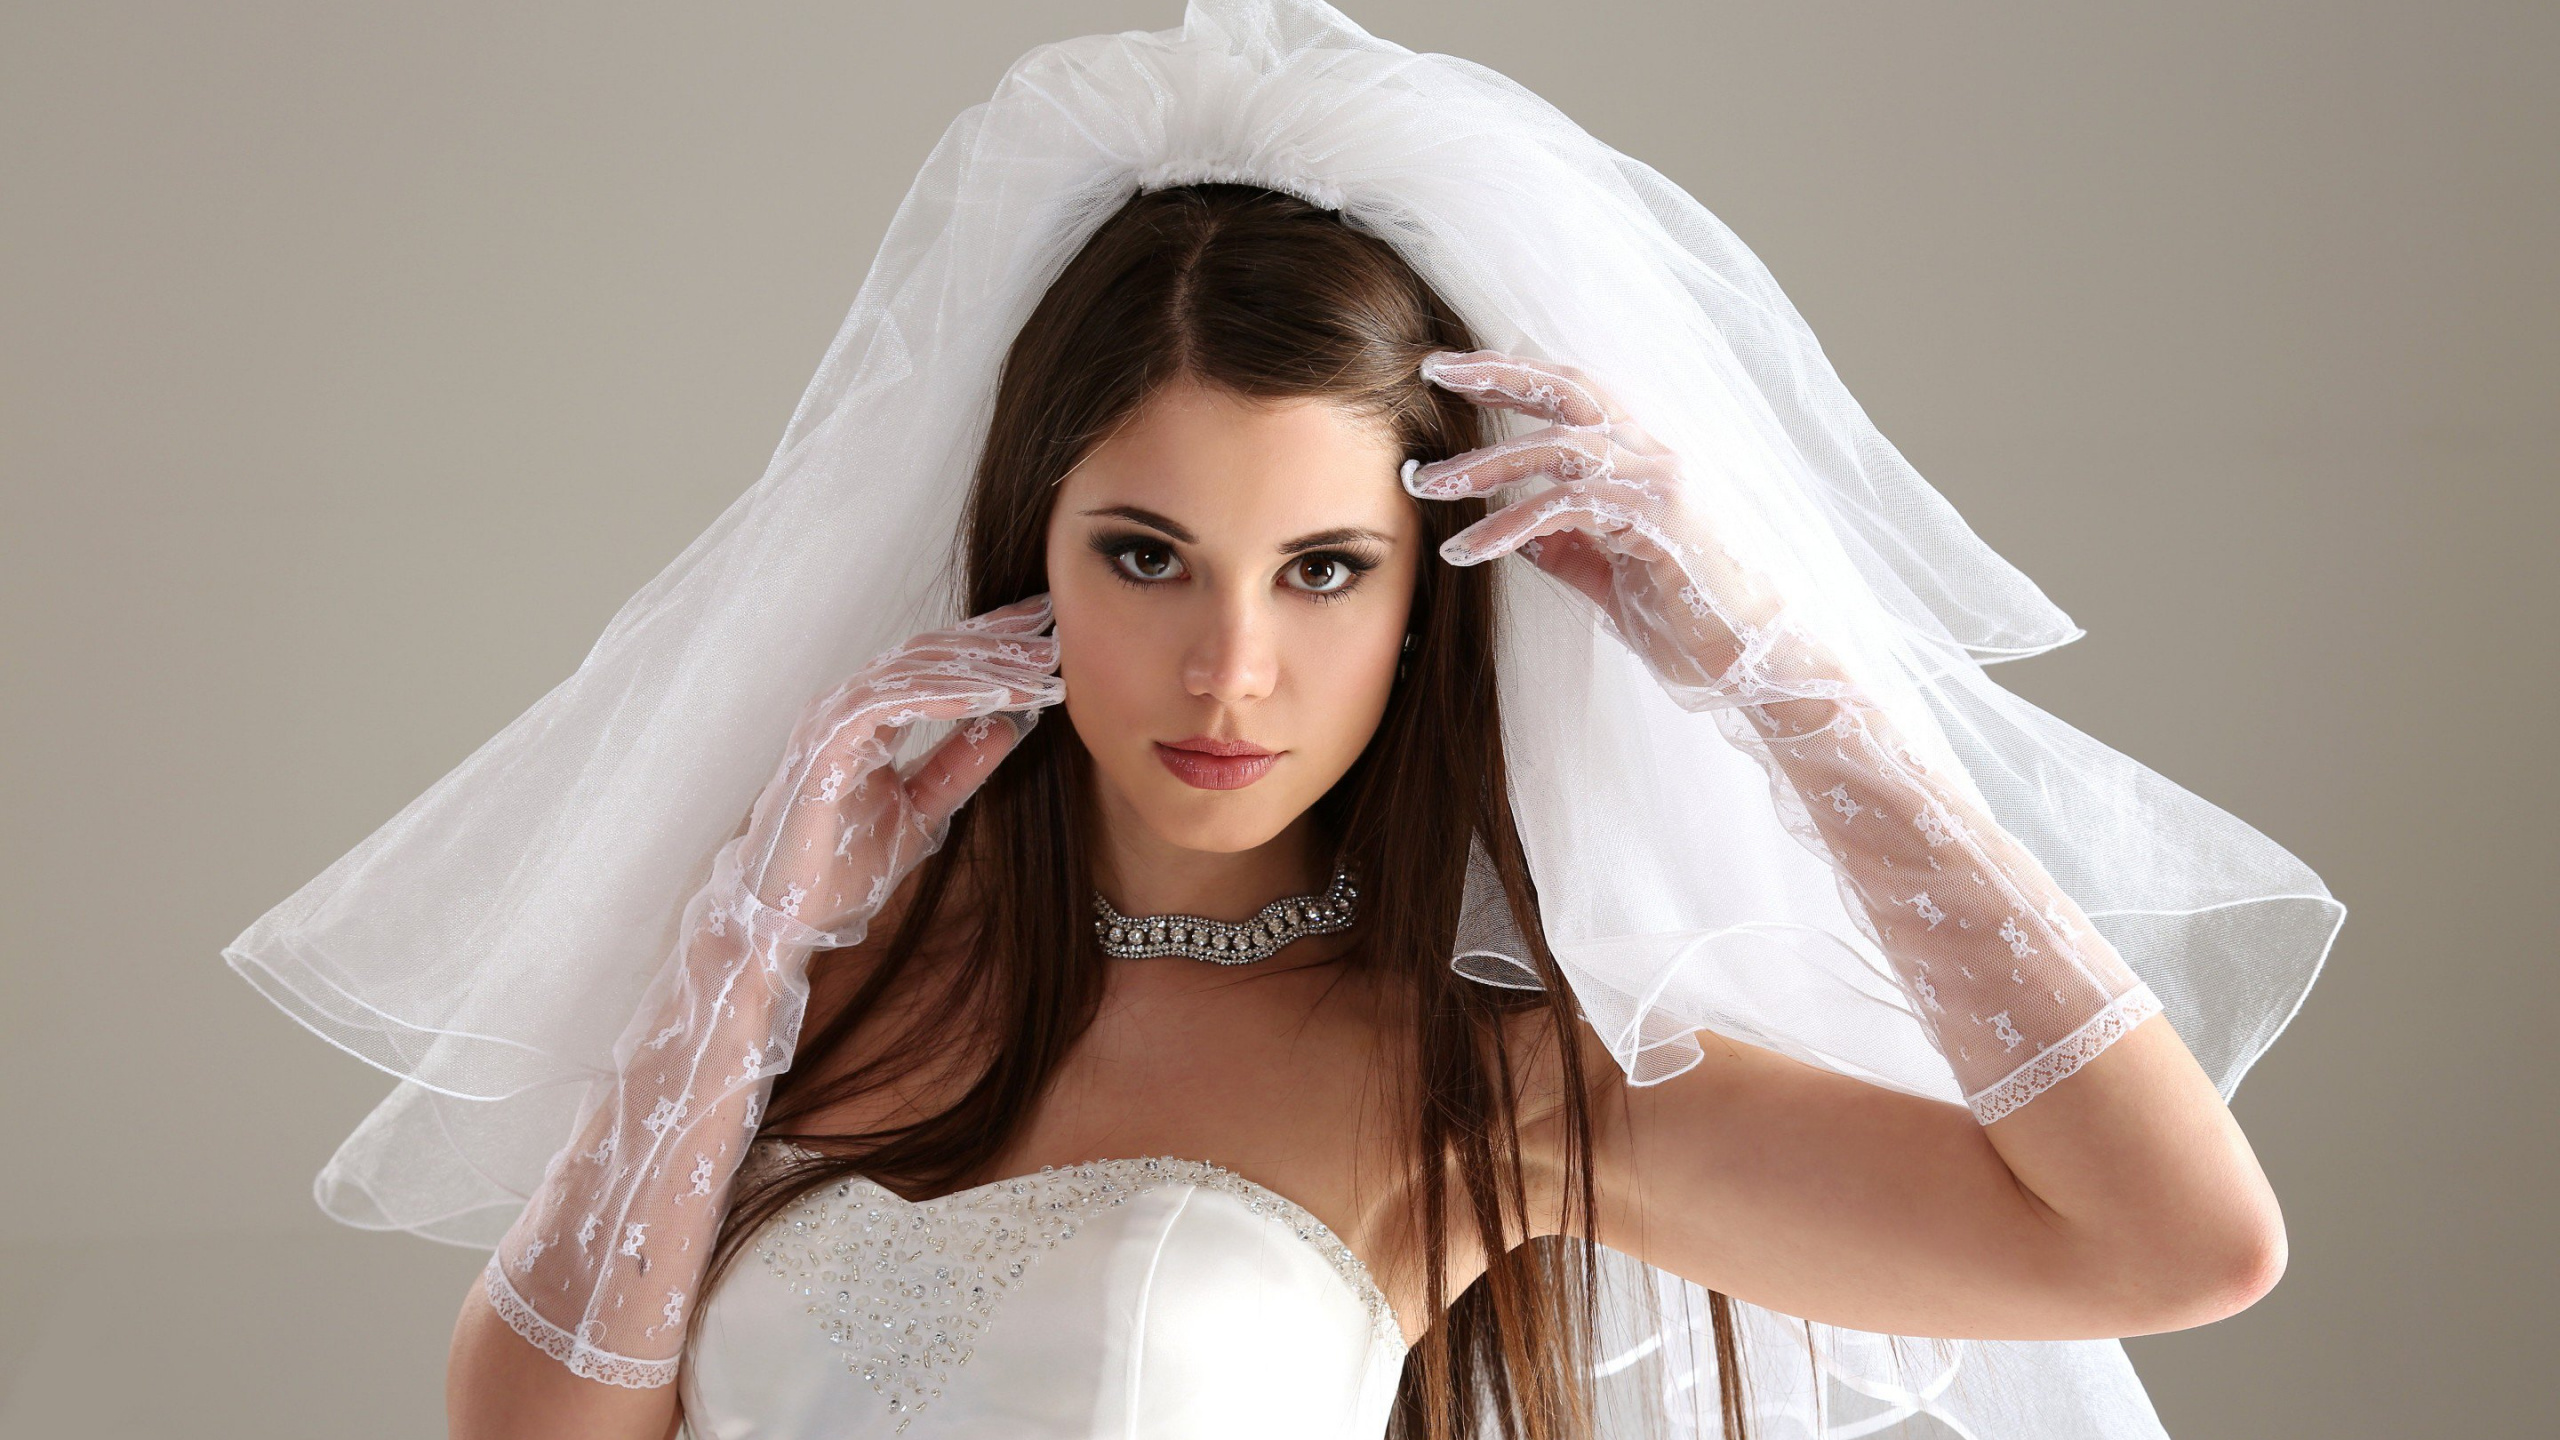 婚礼礼服, 时尚的附件, 头盔, 外套, 头饰 壁纸 2560x1440 允许